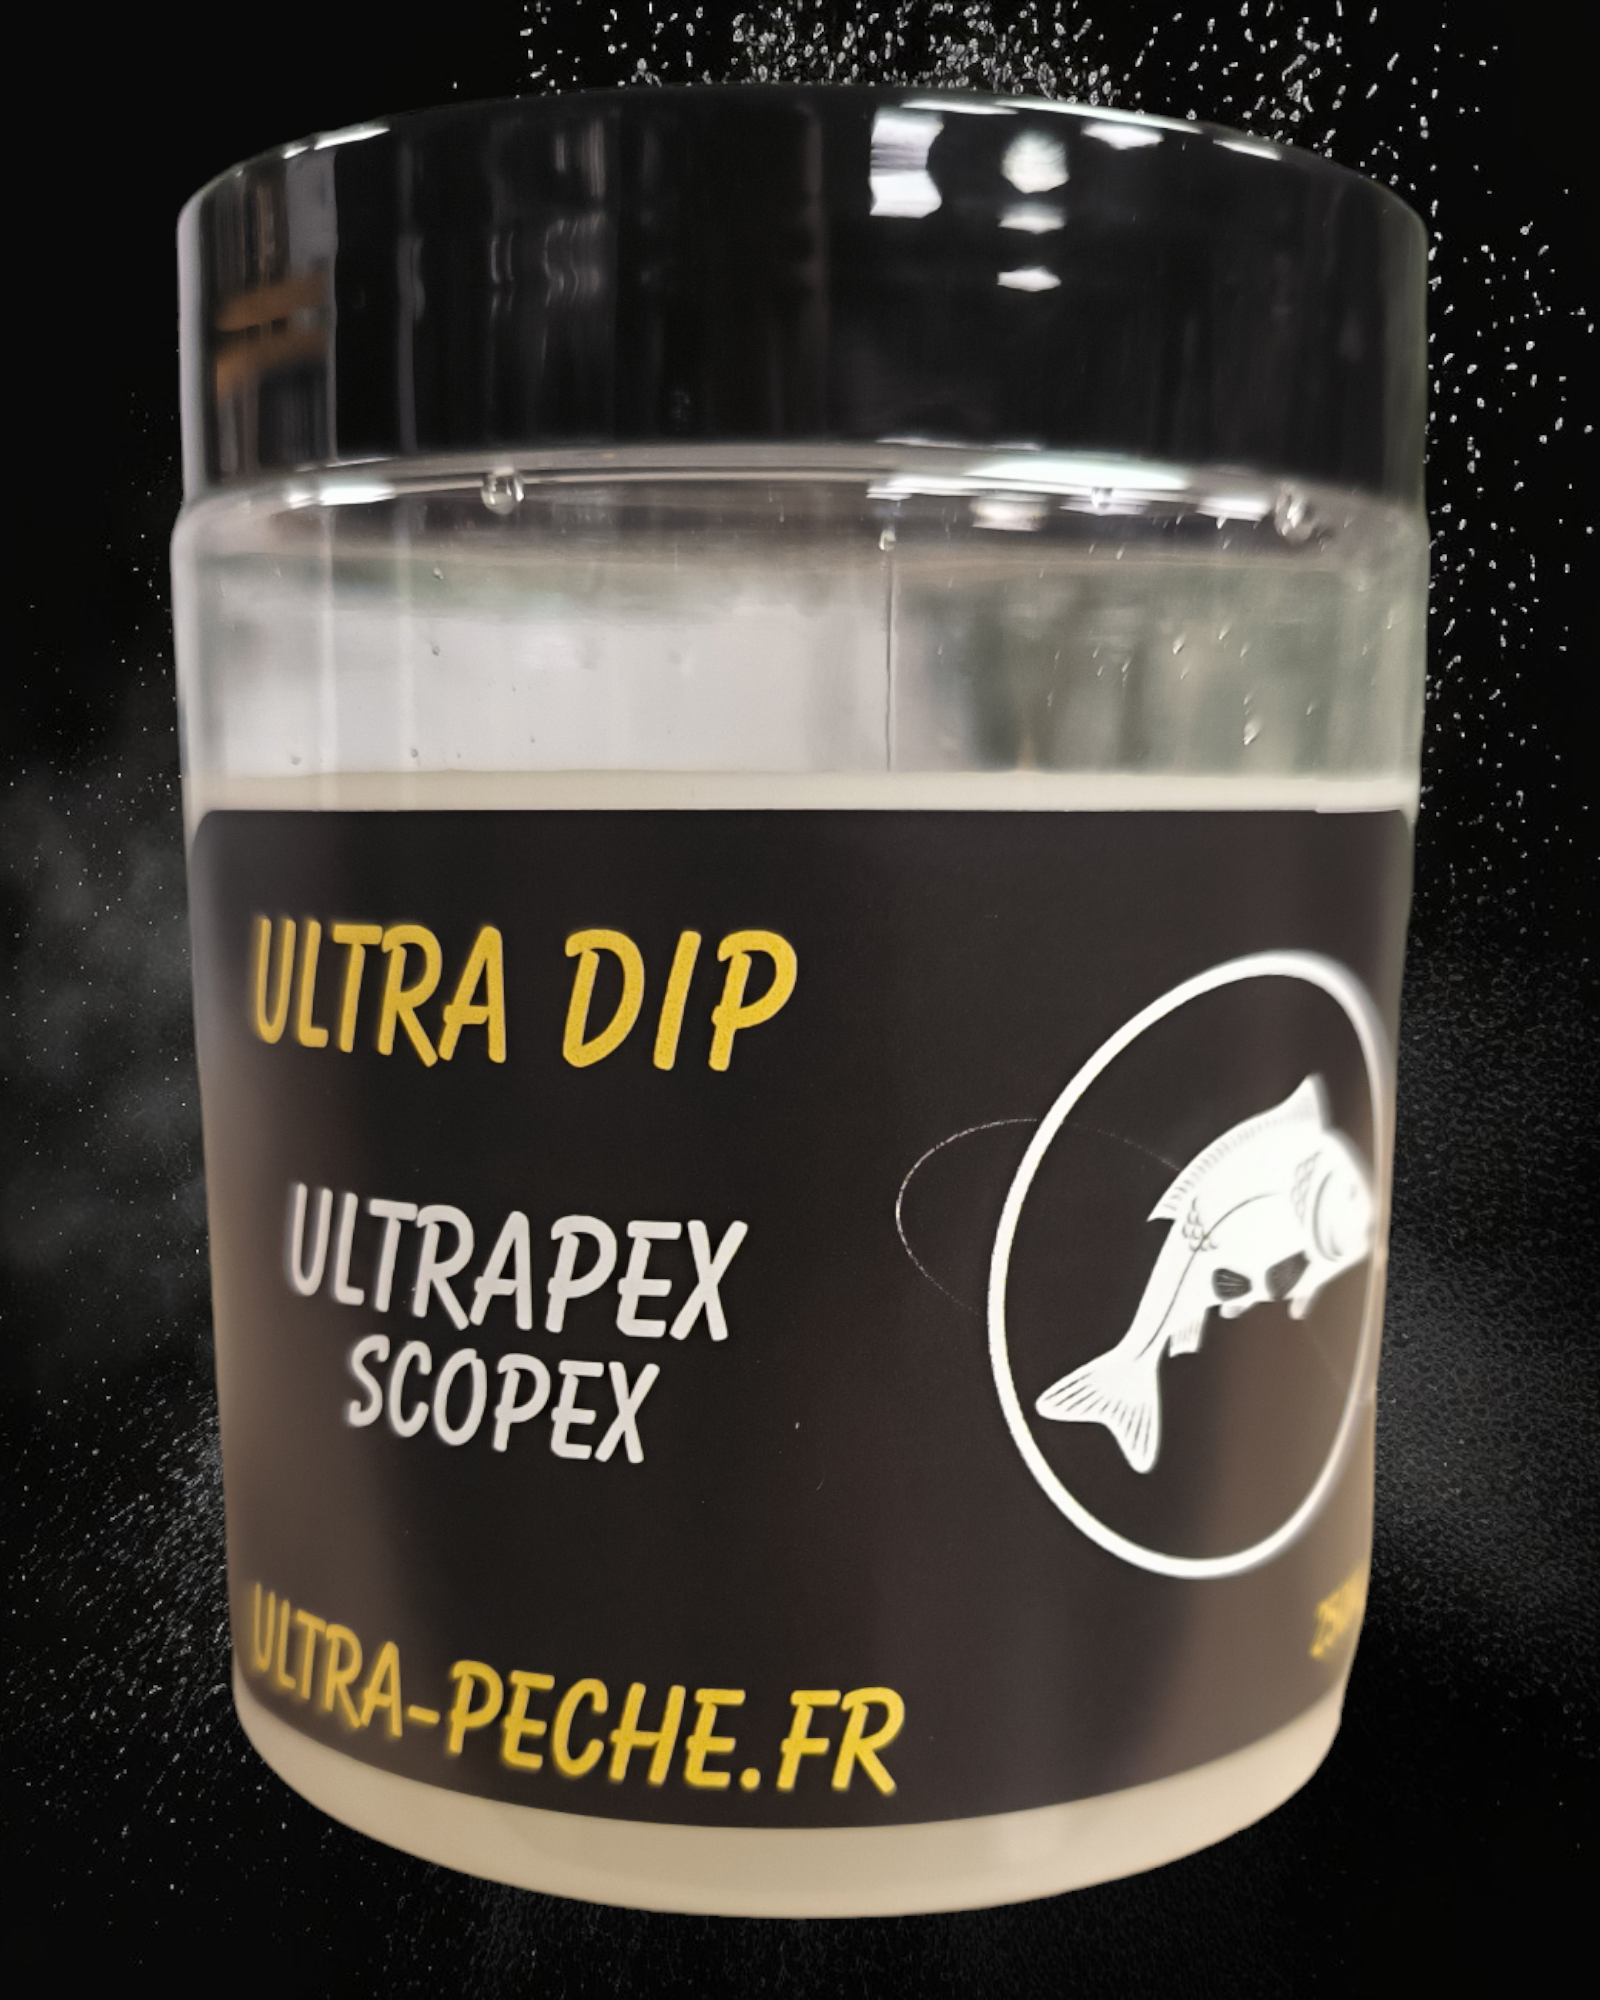 DIP ULTRAPEX 250ml Scopex